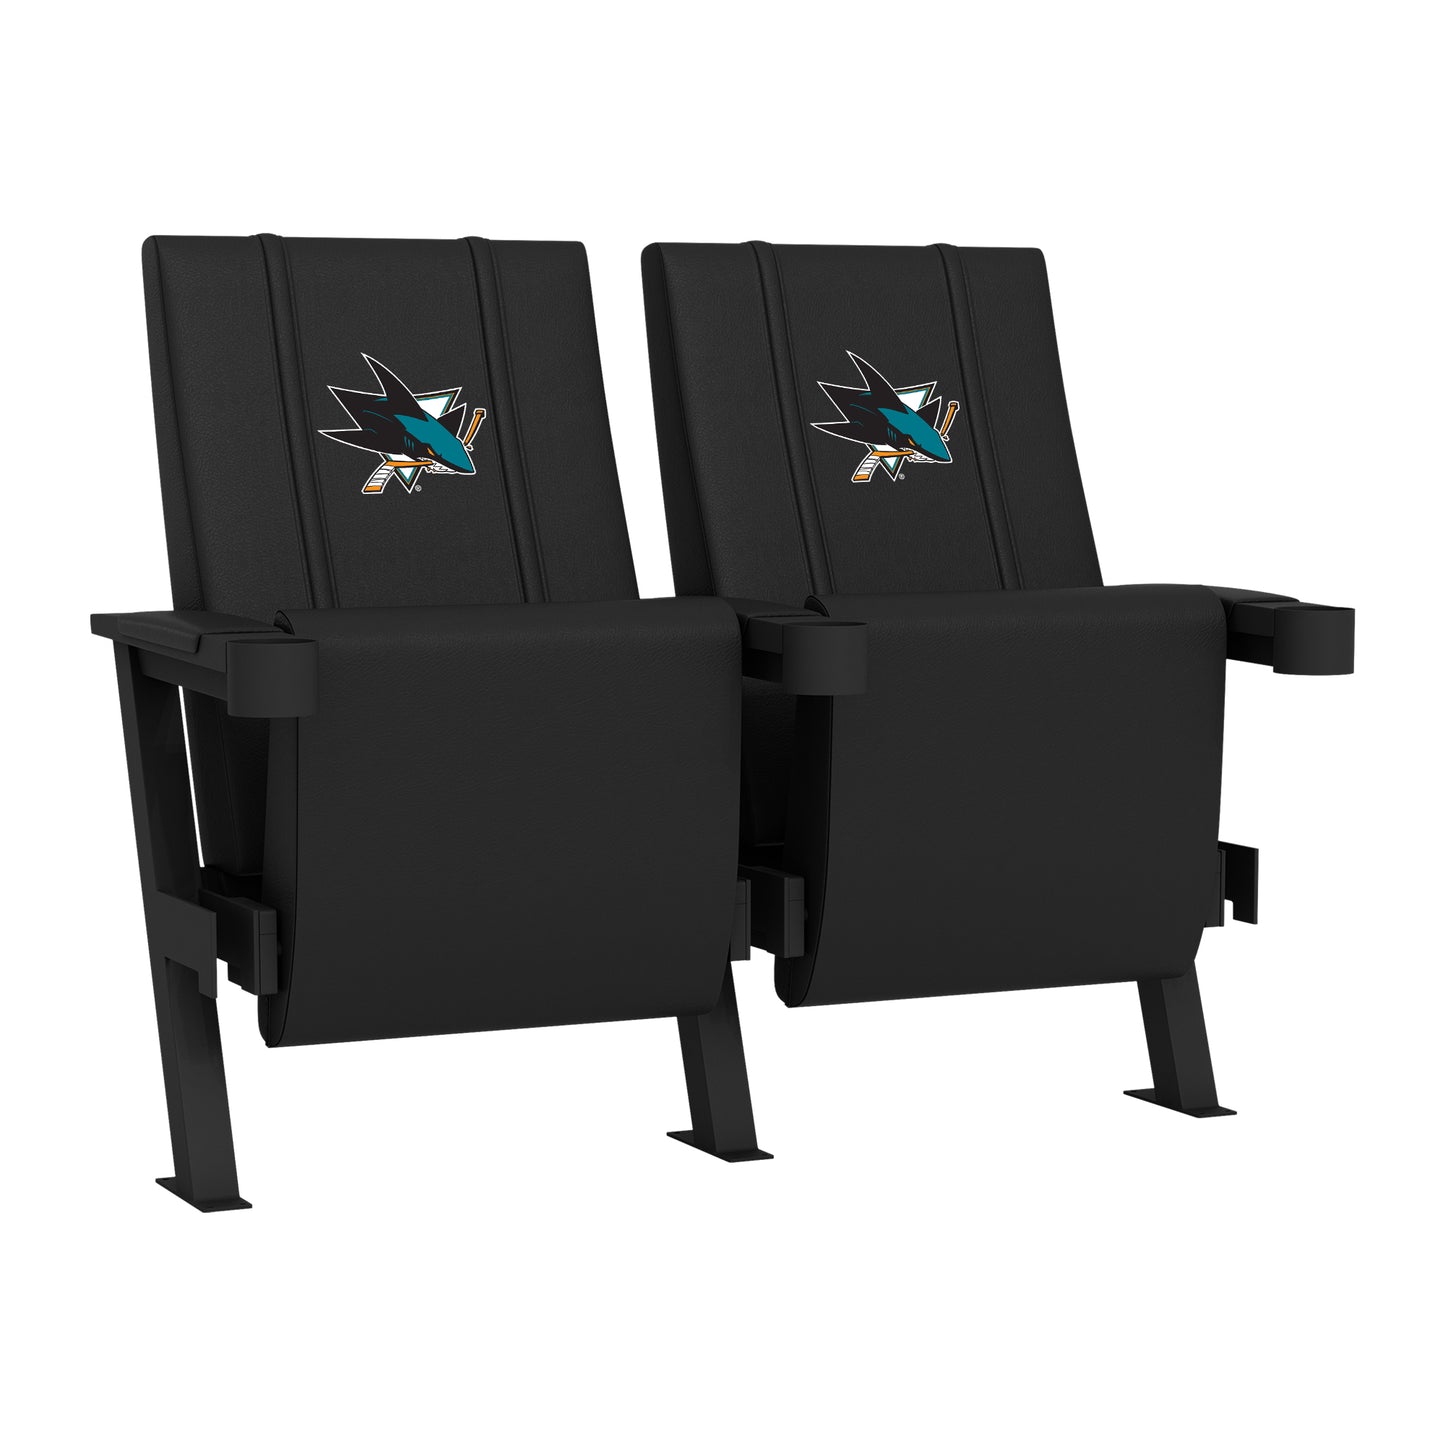 SuiteMax 3.5 VIP Seats with San Jose Sharks Logo